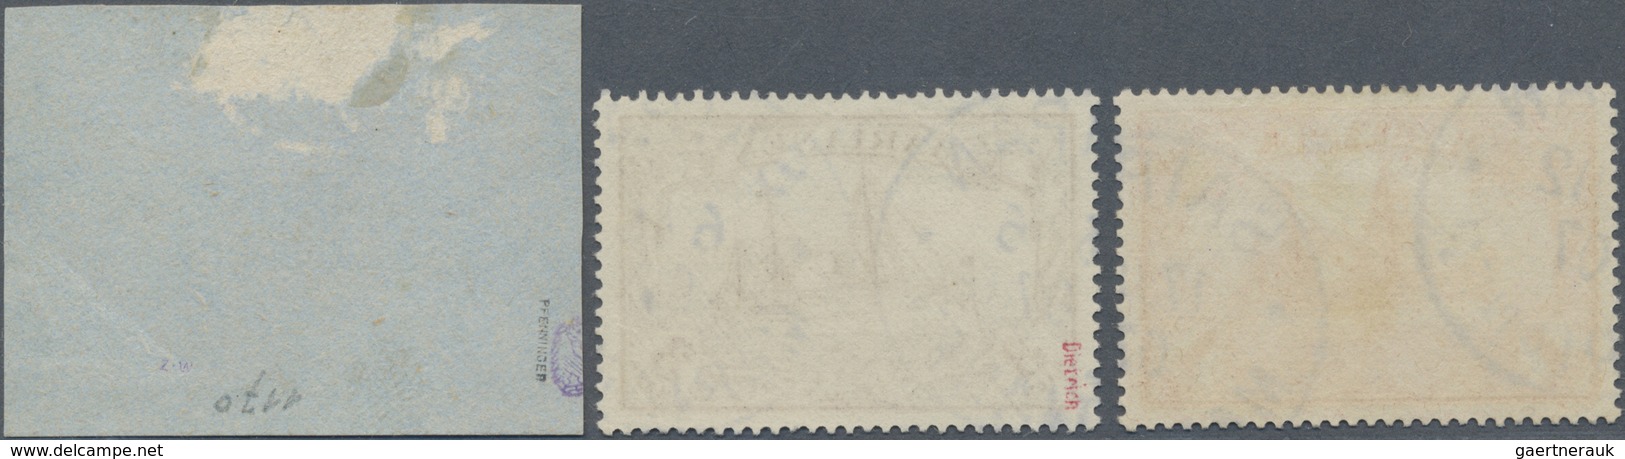 Brfst/O Deutsche Kolonien - Marianen: 1901. Schiffstype 5 Mark Auf Briefstück, Signiert Pfenninger, Dazu 3 M - Mariannes